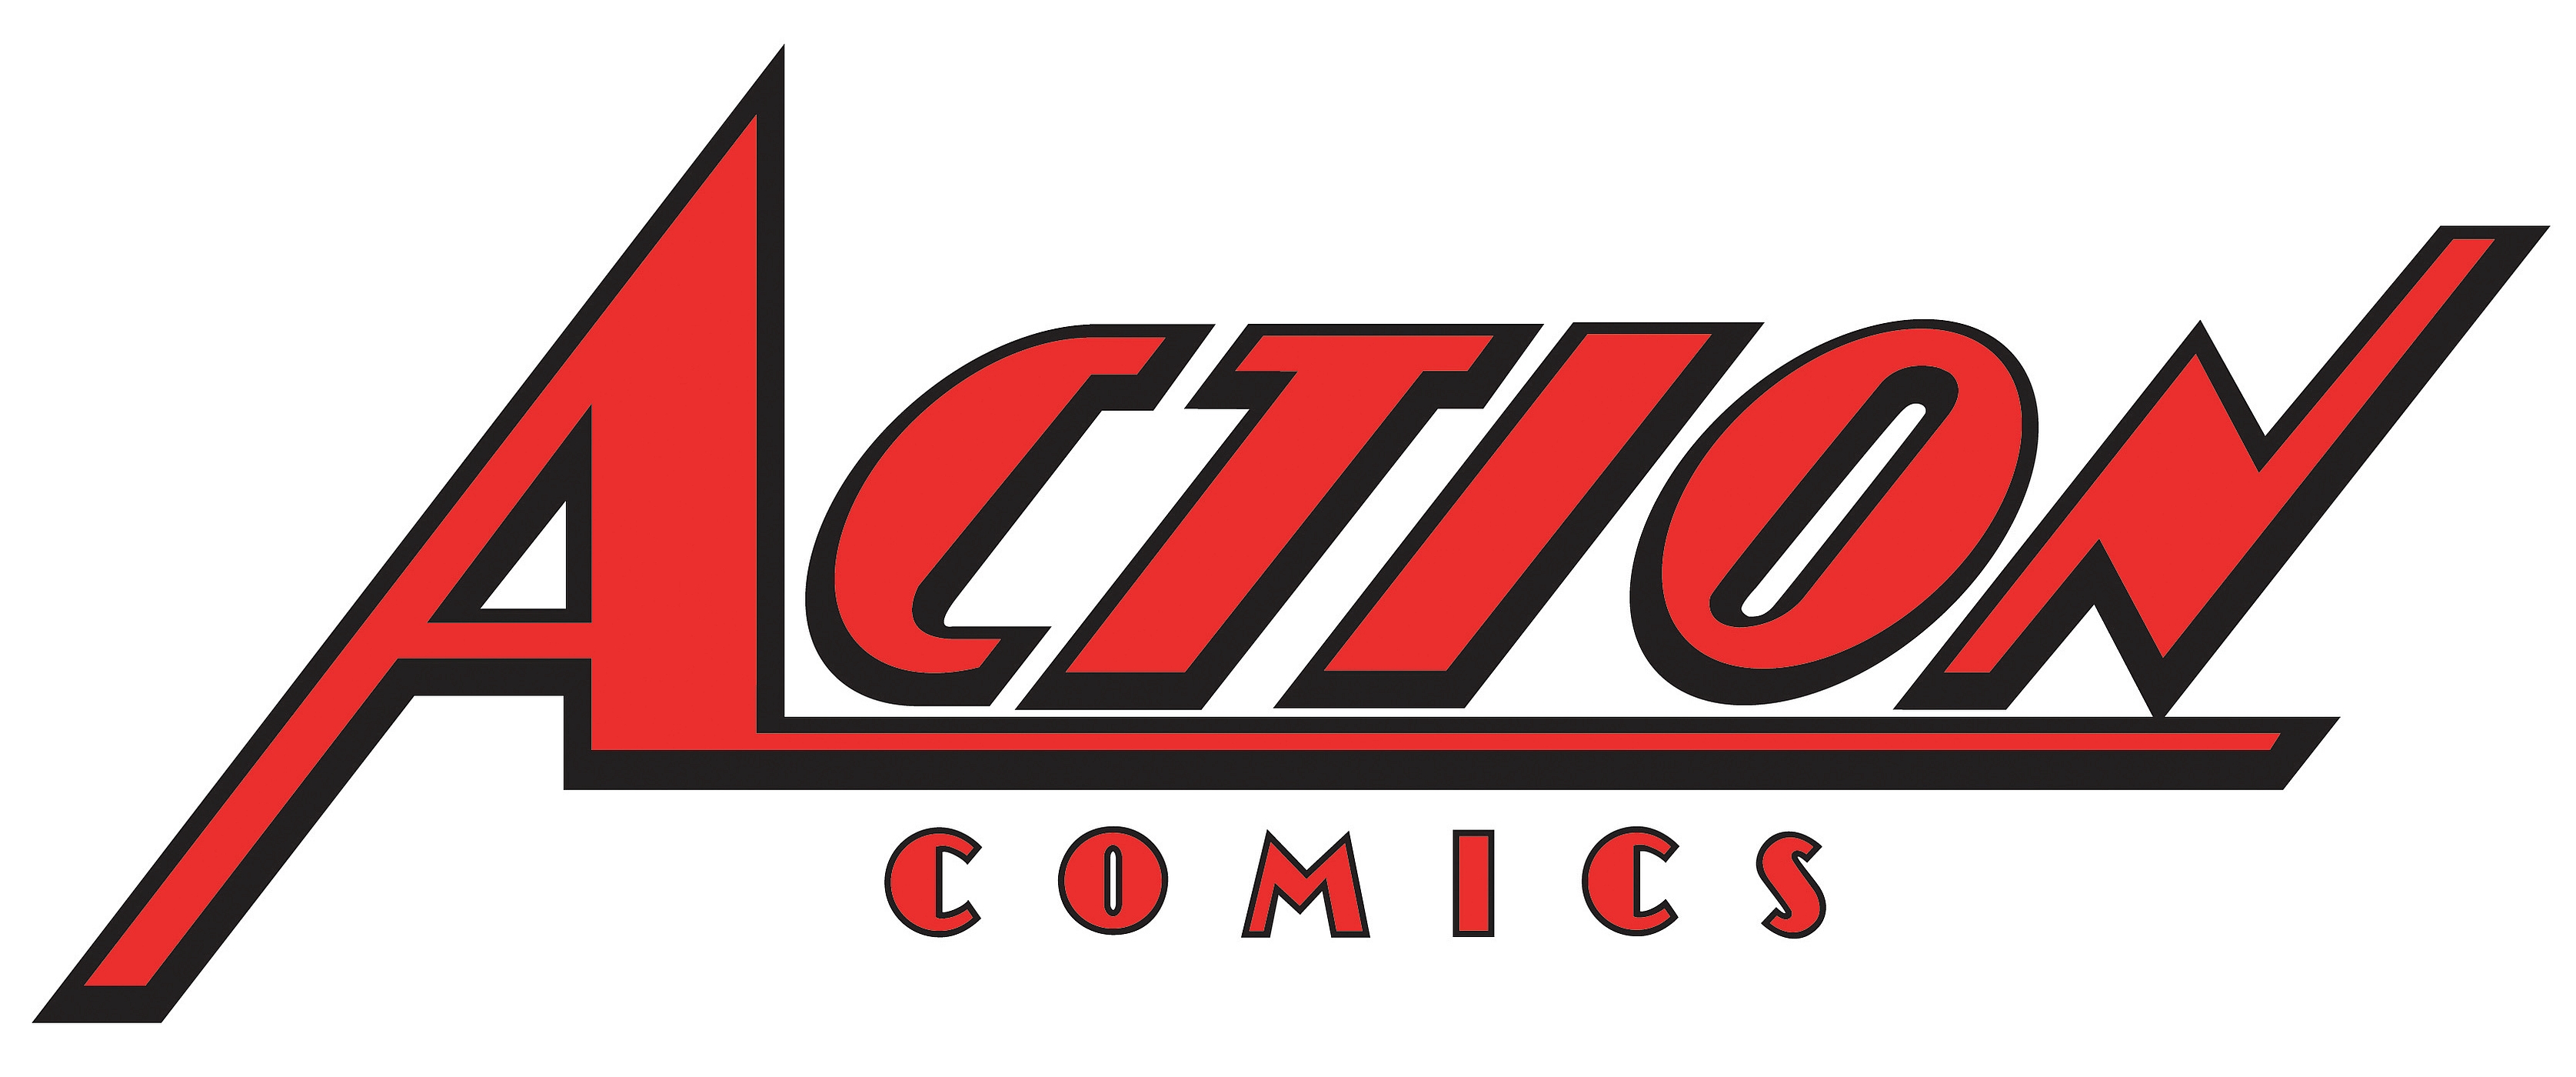 comics, action comics